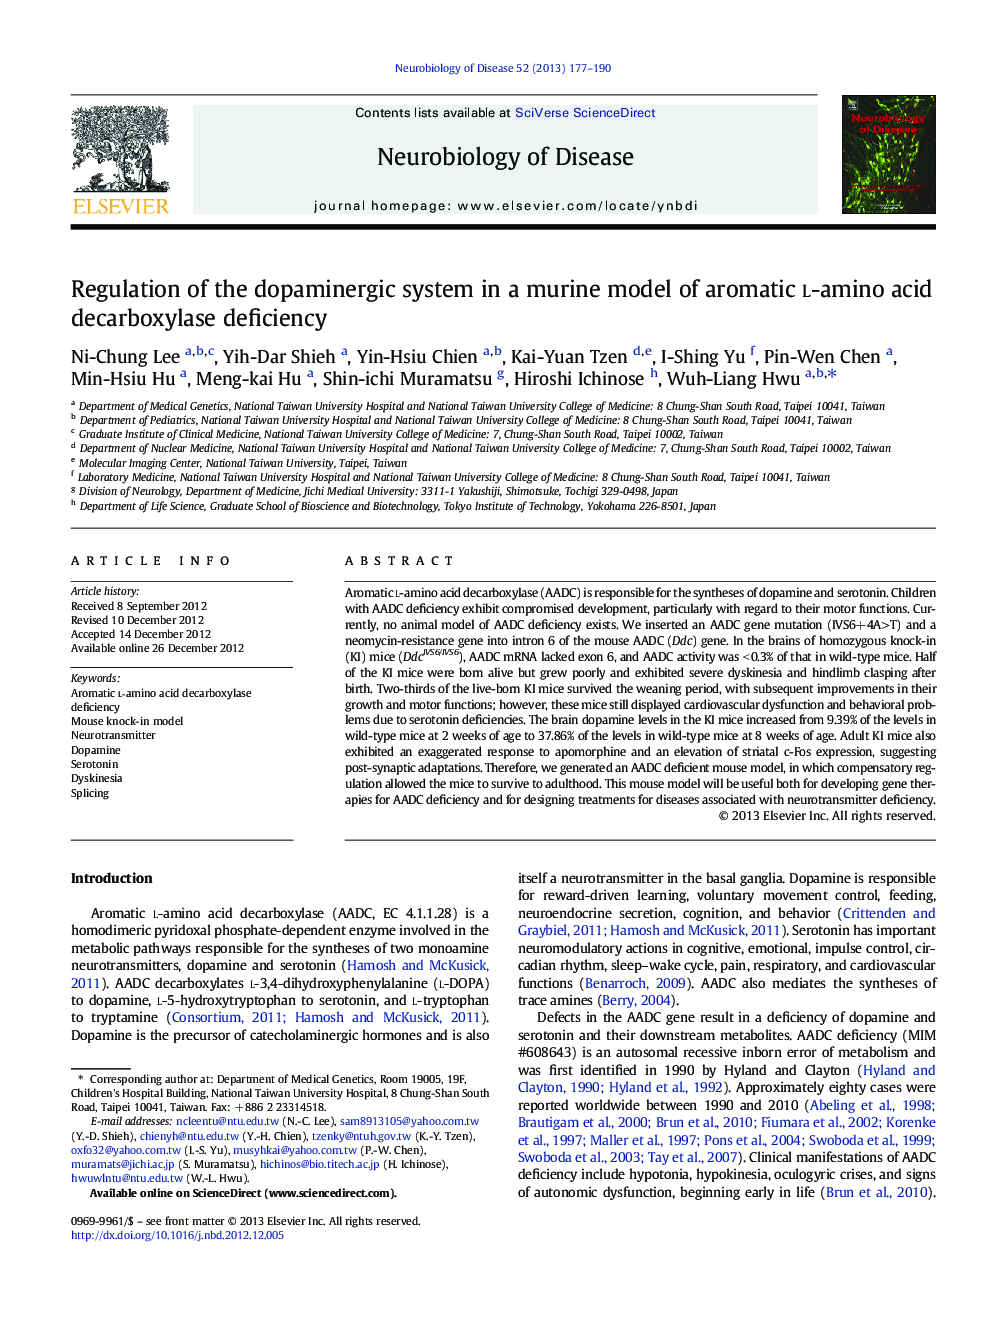 مقررات سیستم دوپامینرژیک در یک مدل موشکی کمبود آمینو اسید دکربوکسیلاز معطر 